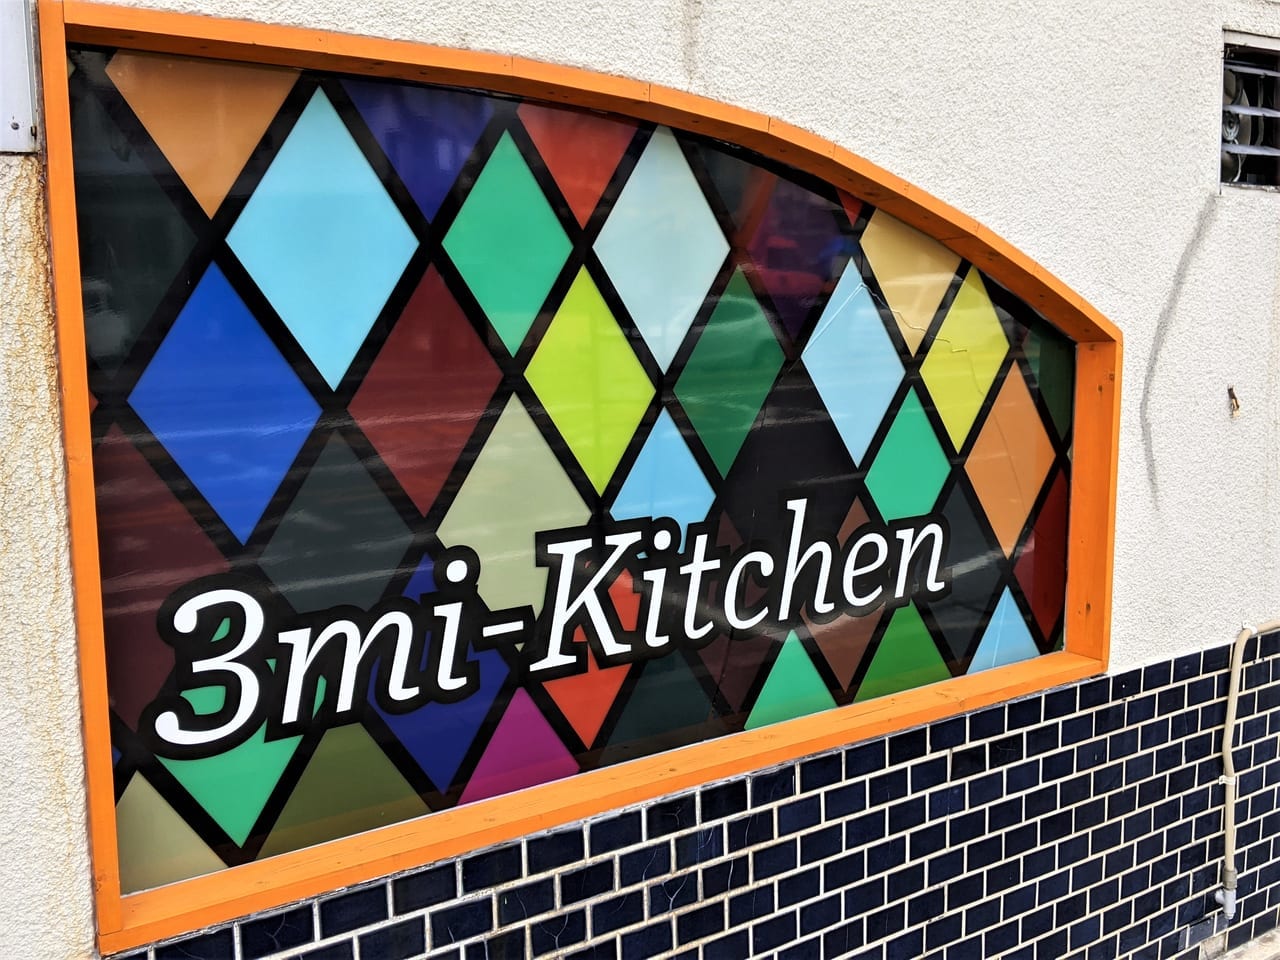 「3mi-kitchen」の外観